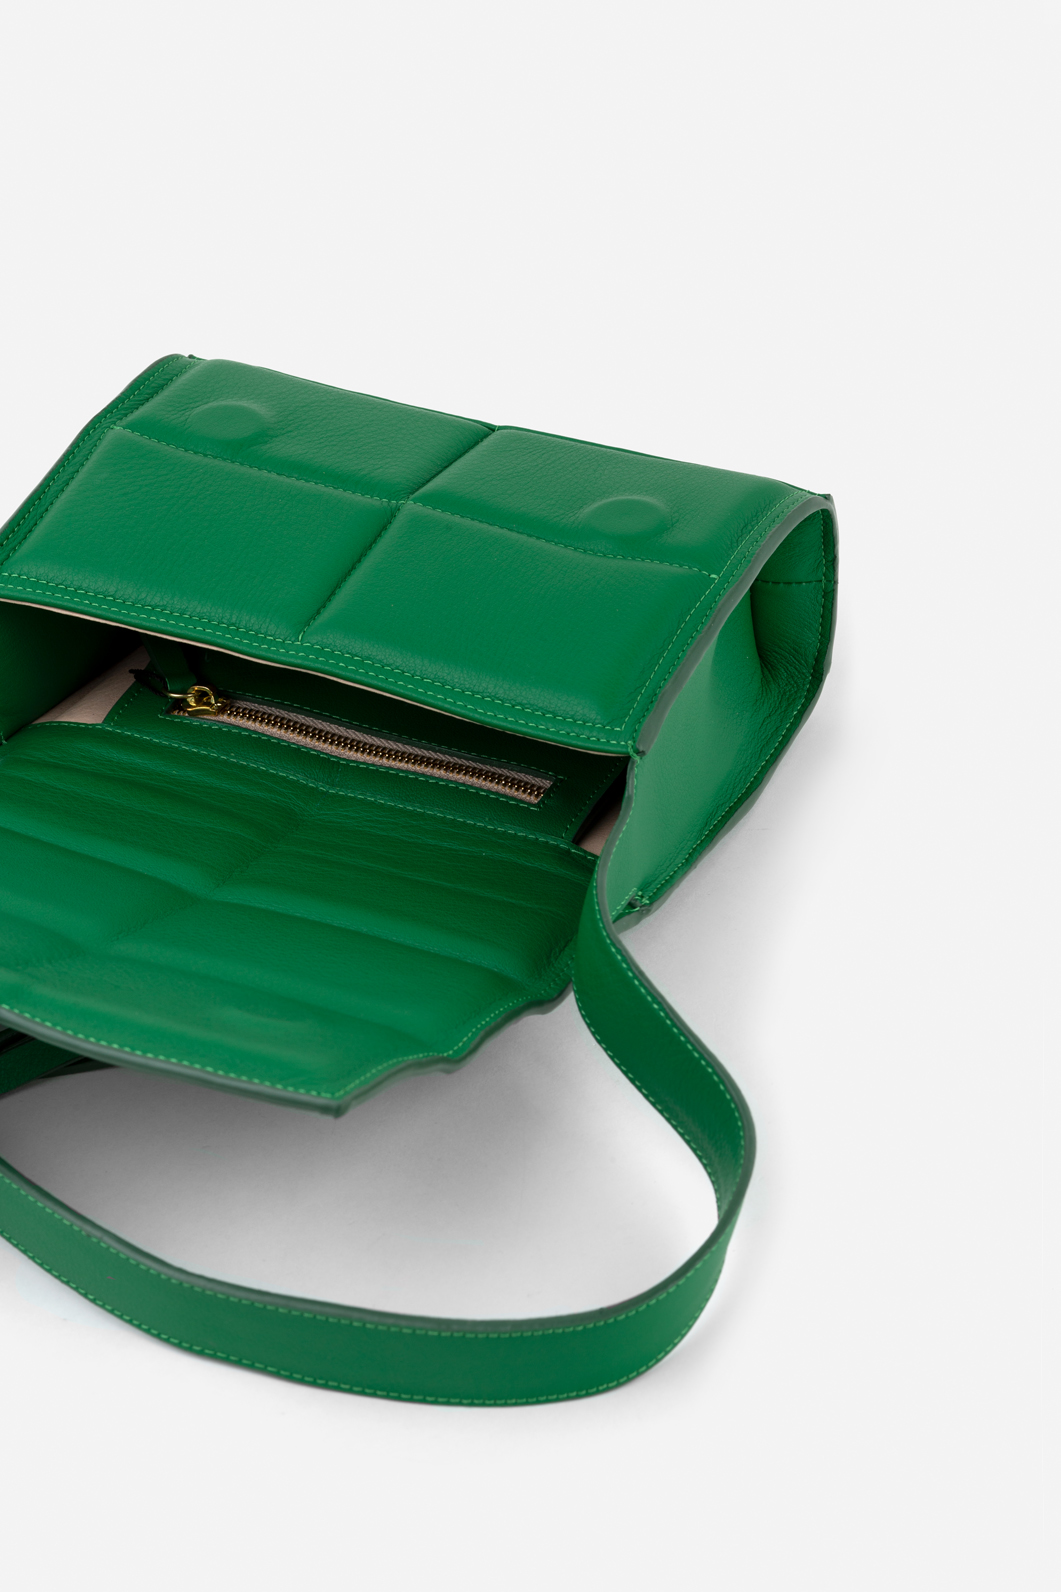 Vianne green leather
baguette bag /gold/